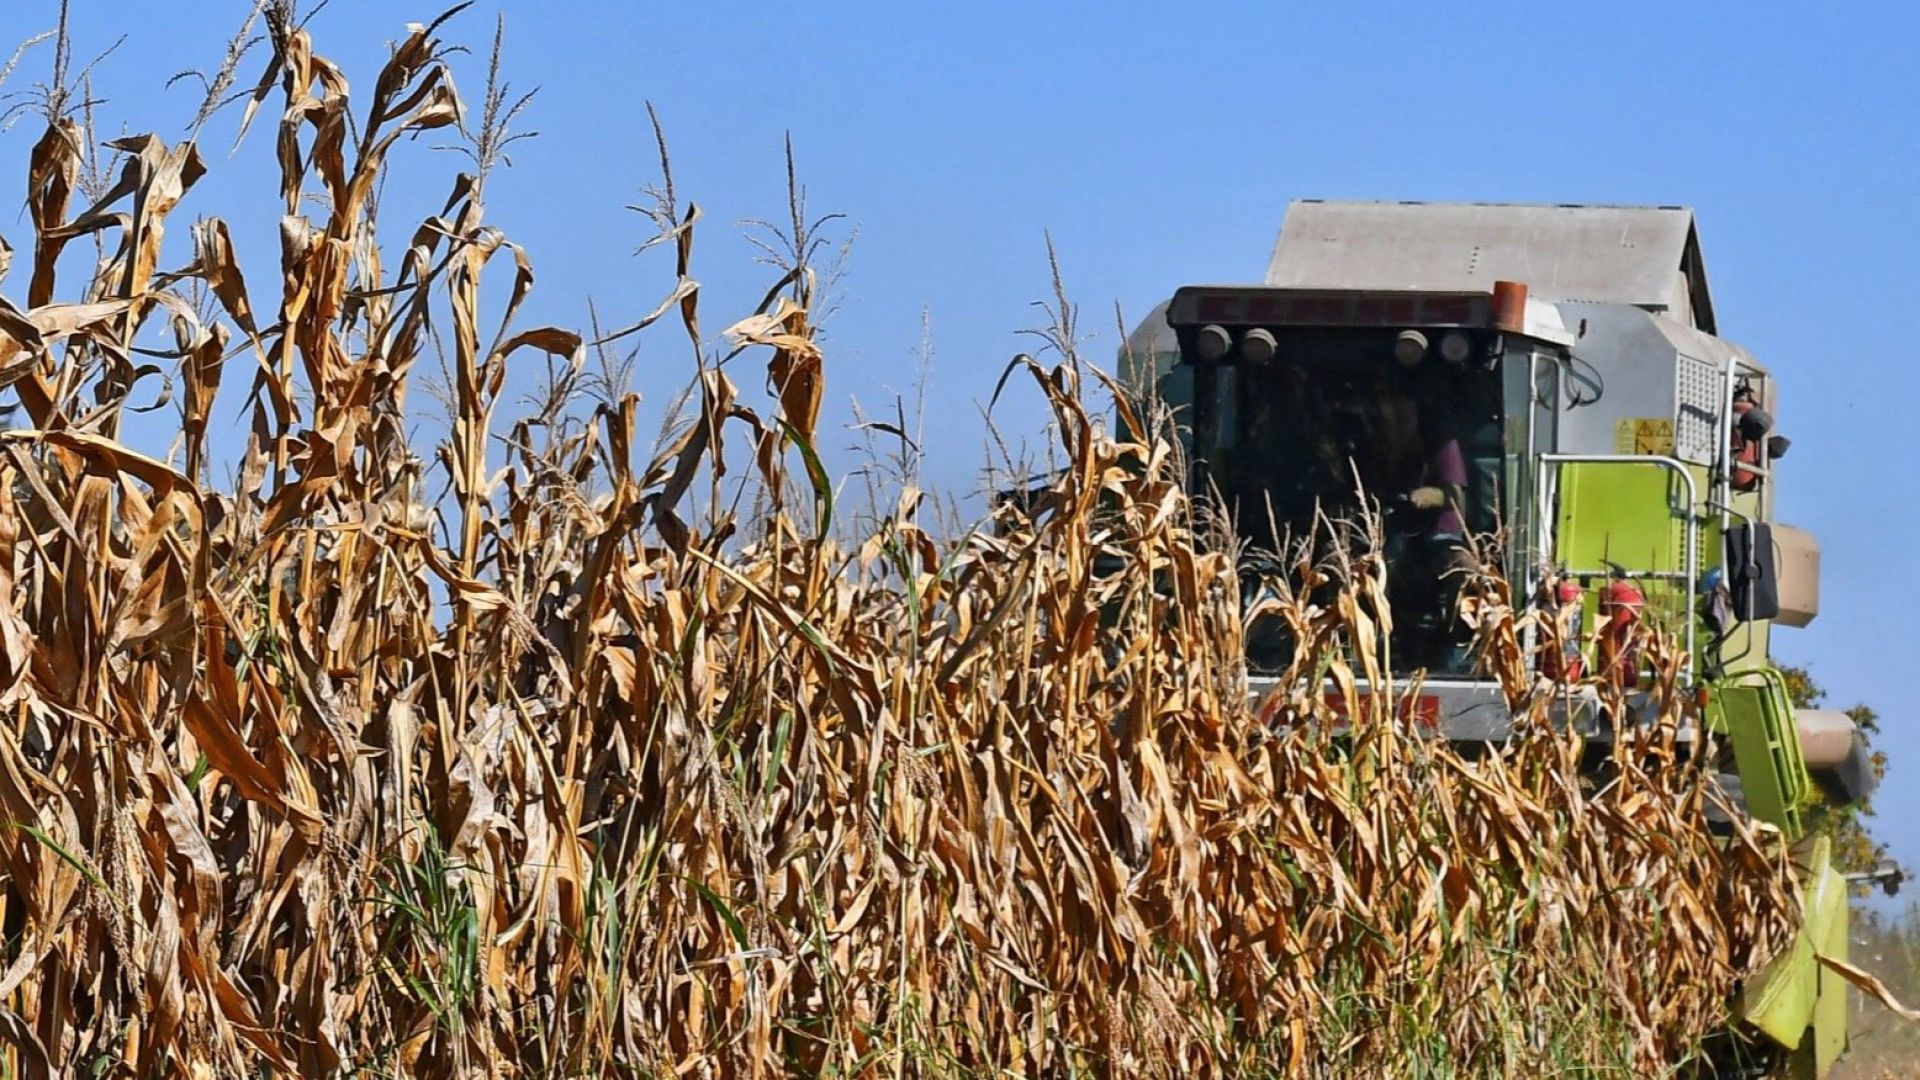 На ръба на продоволствена криза: Войната изкарва на преден план угарите